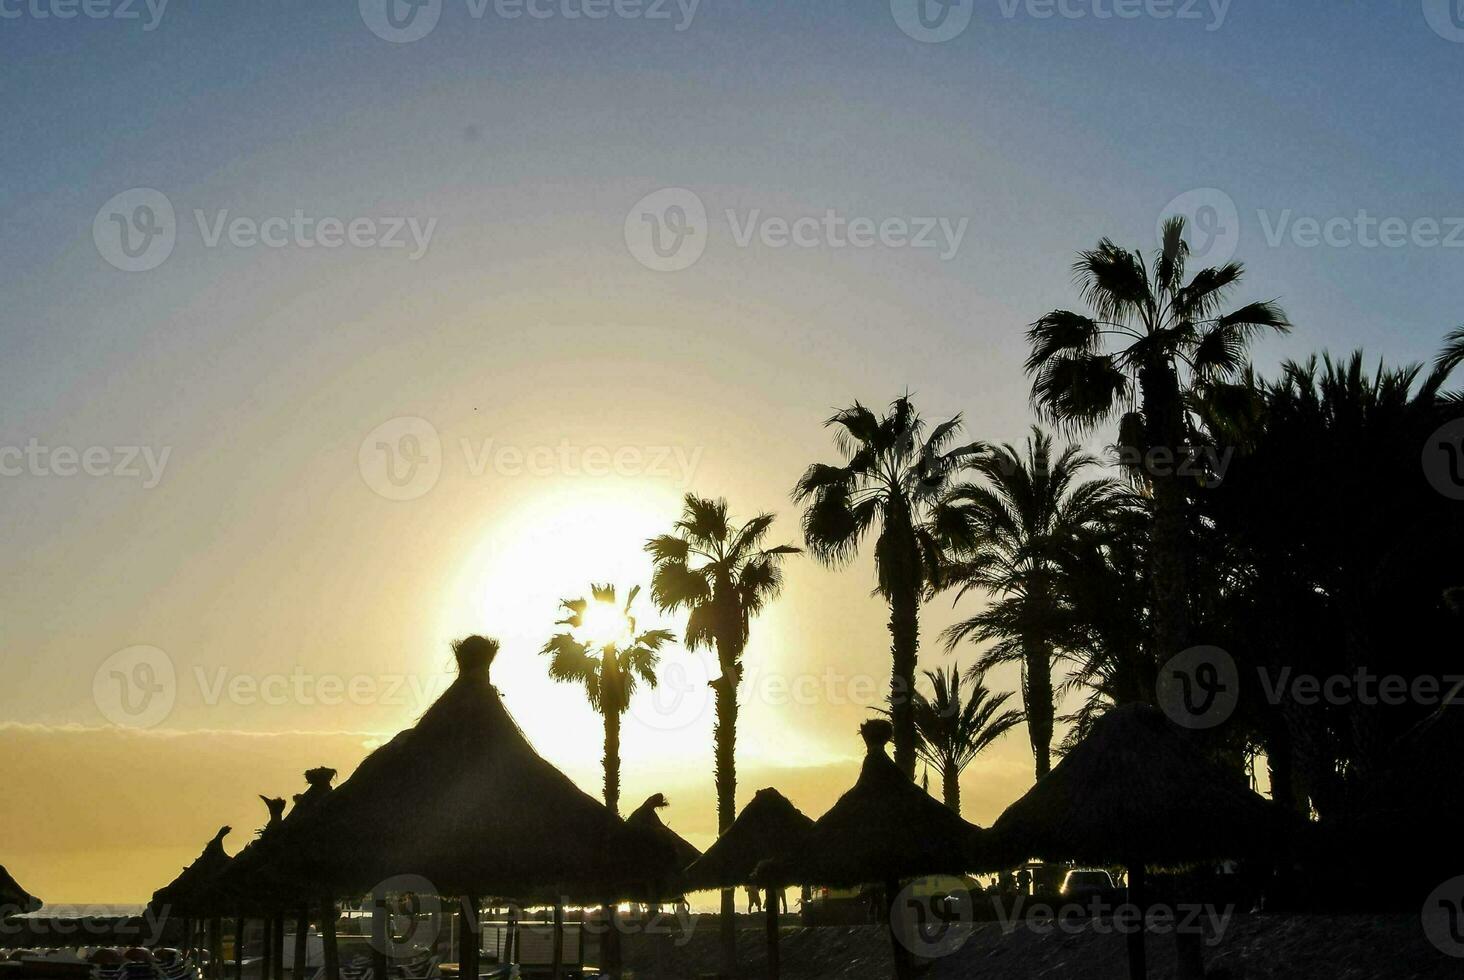 le Soleil ensembles derrière paume des arbres et parapluies à le plage photo